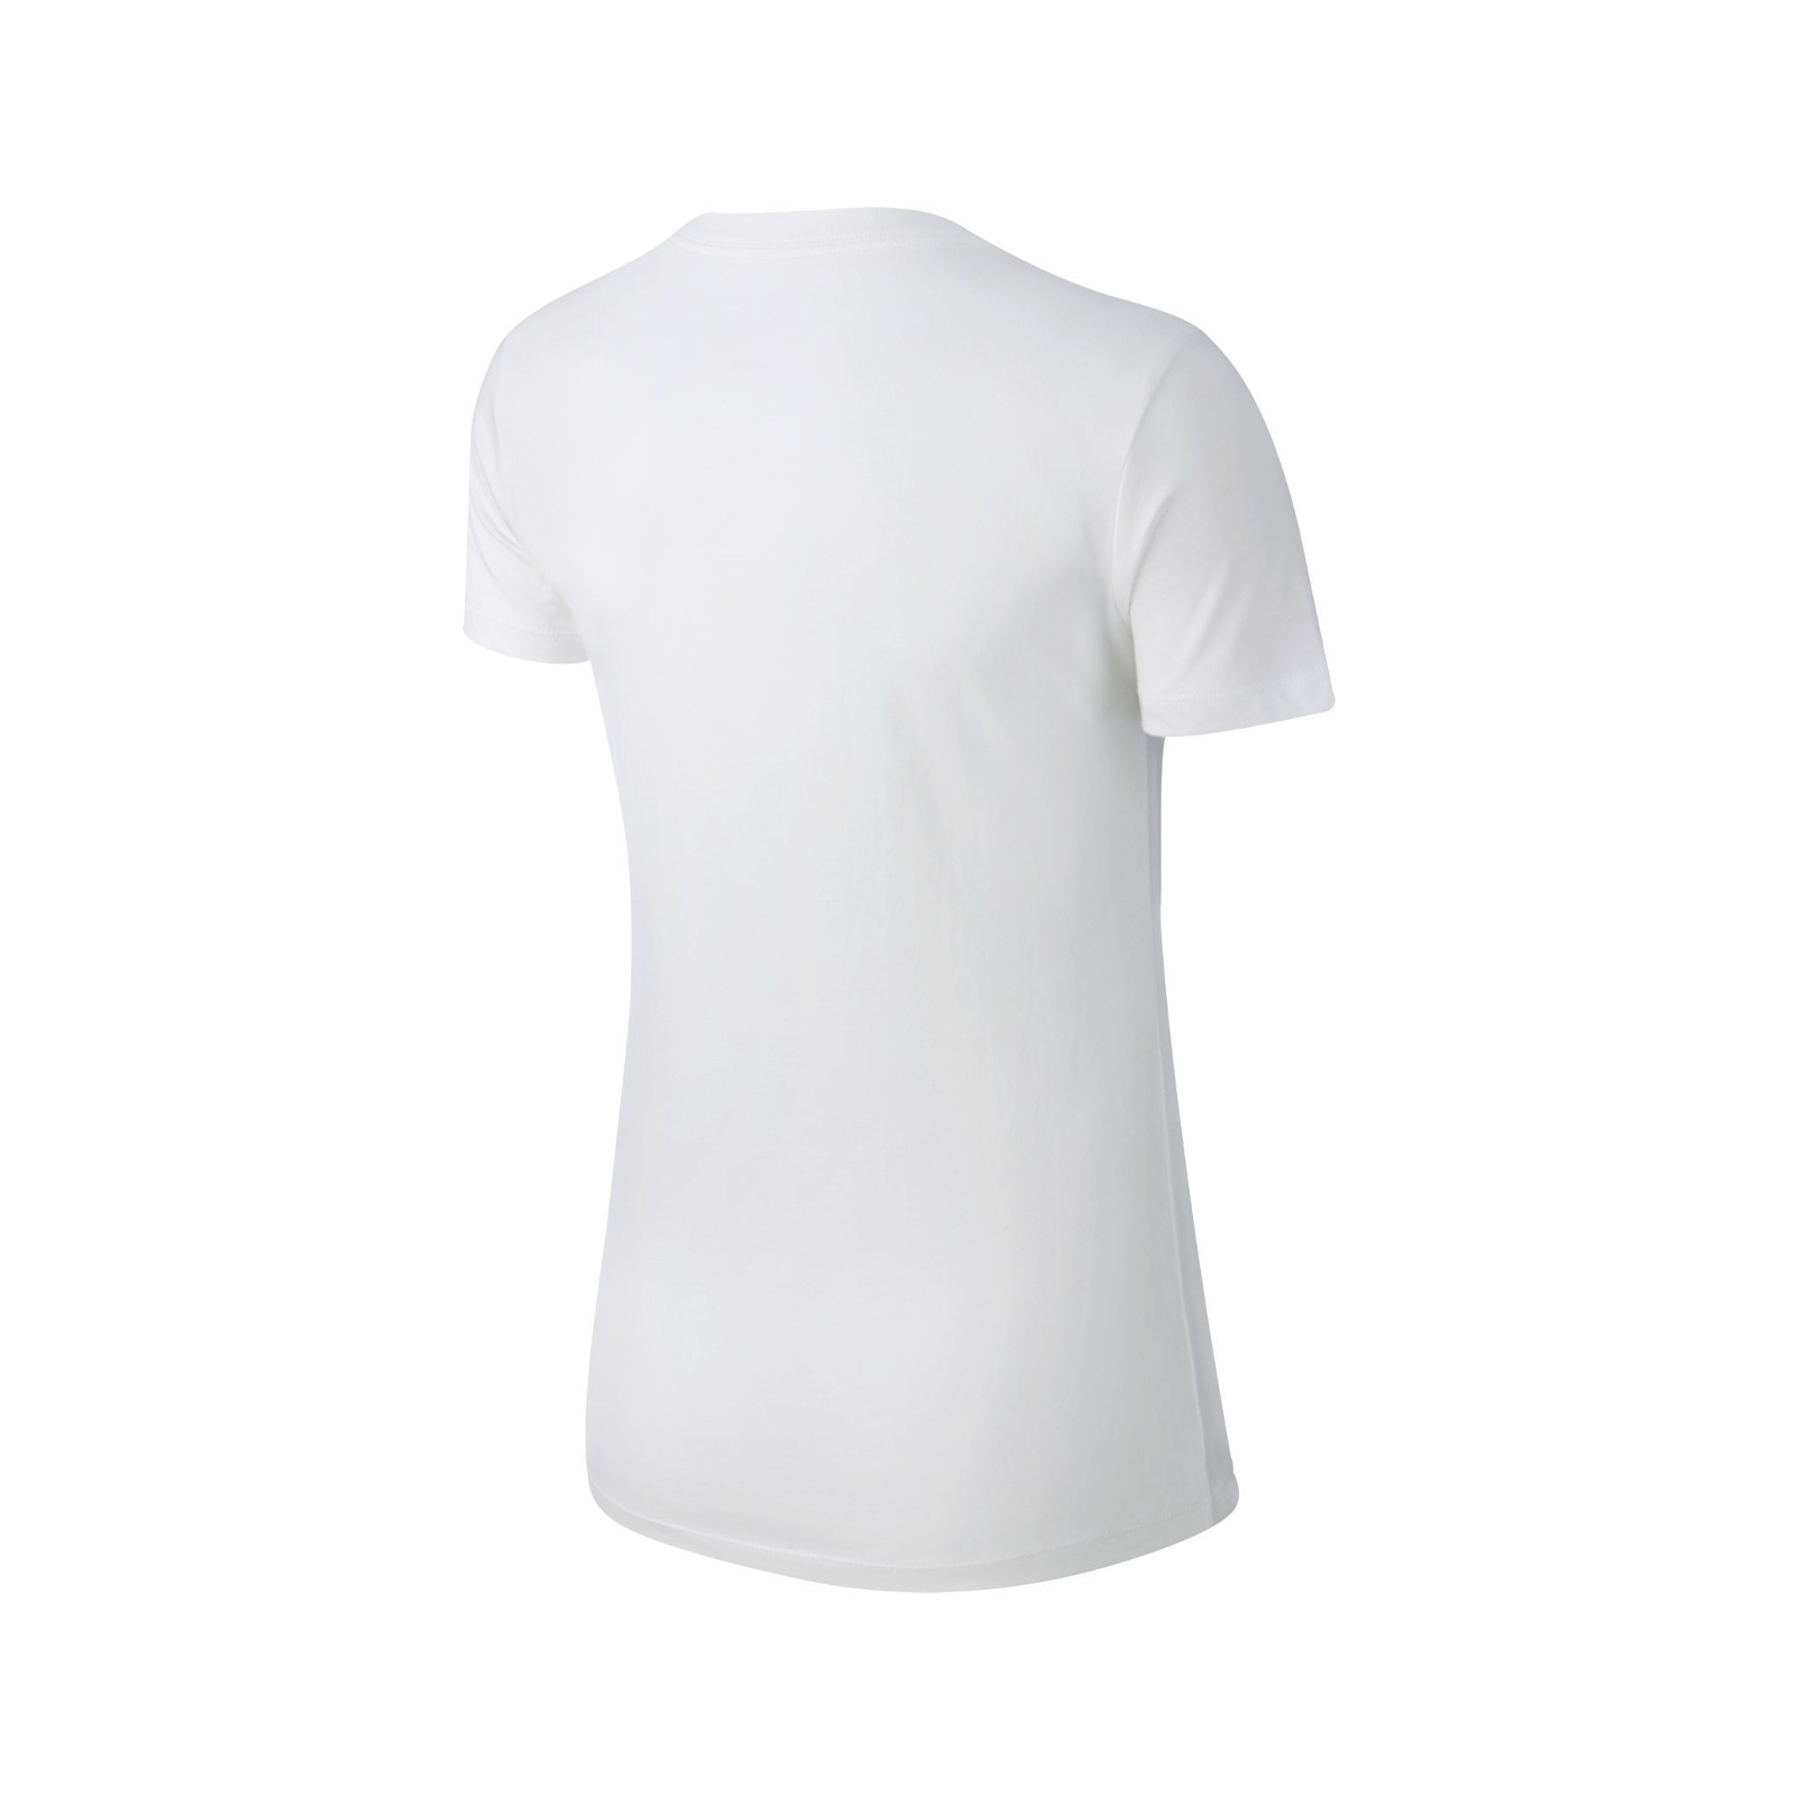 Sportswear Essential Kadın Beyaz Tişört (BV6169-100)